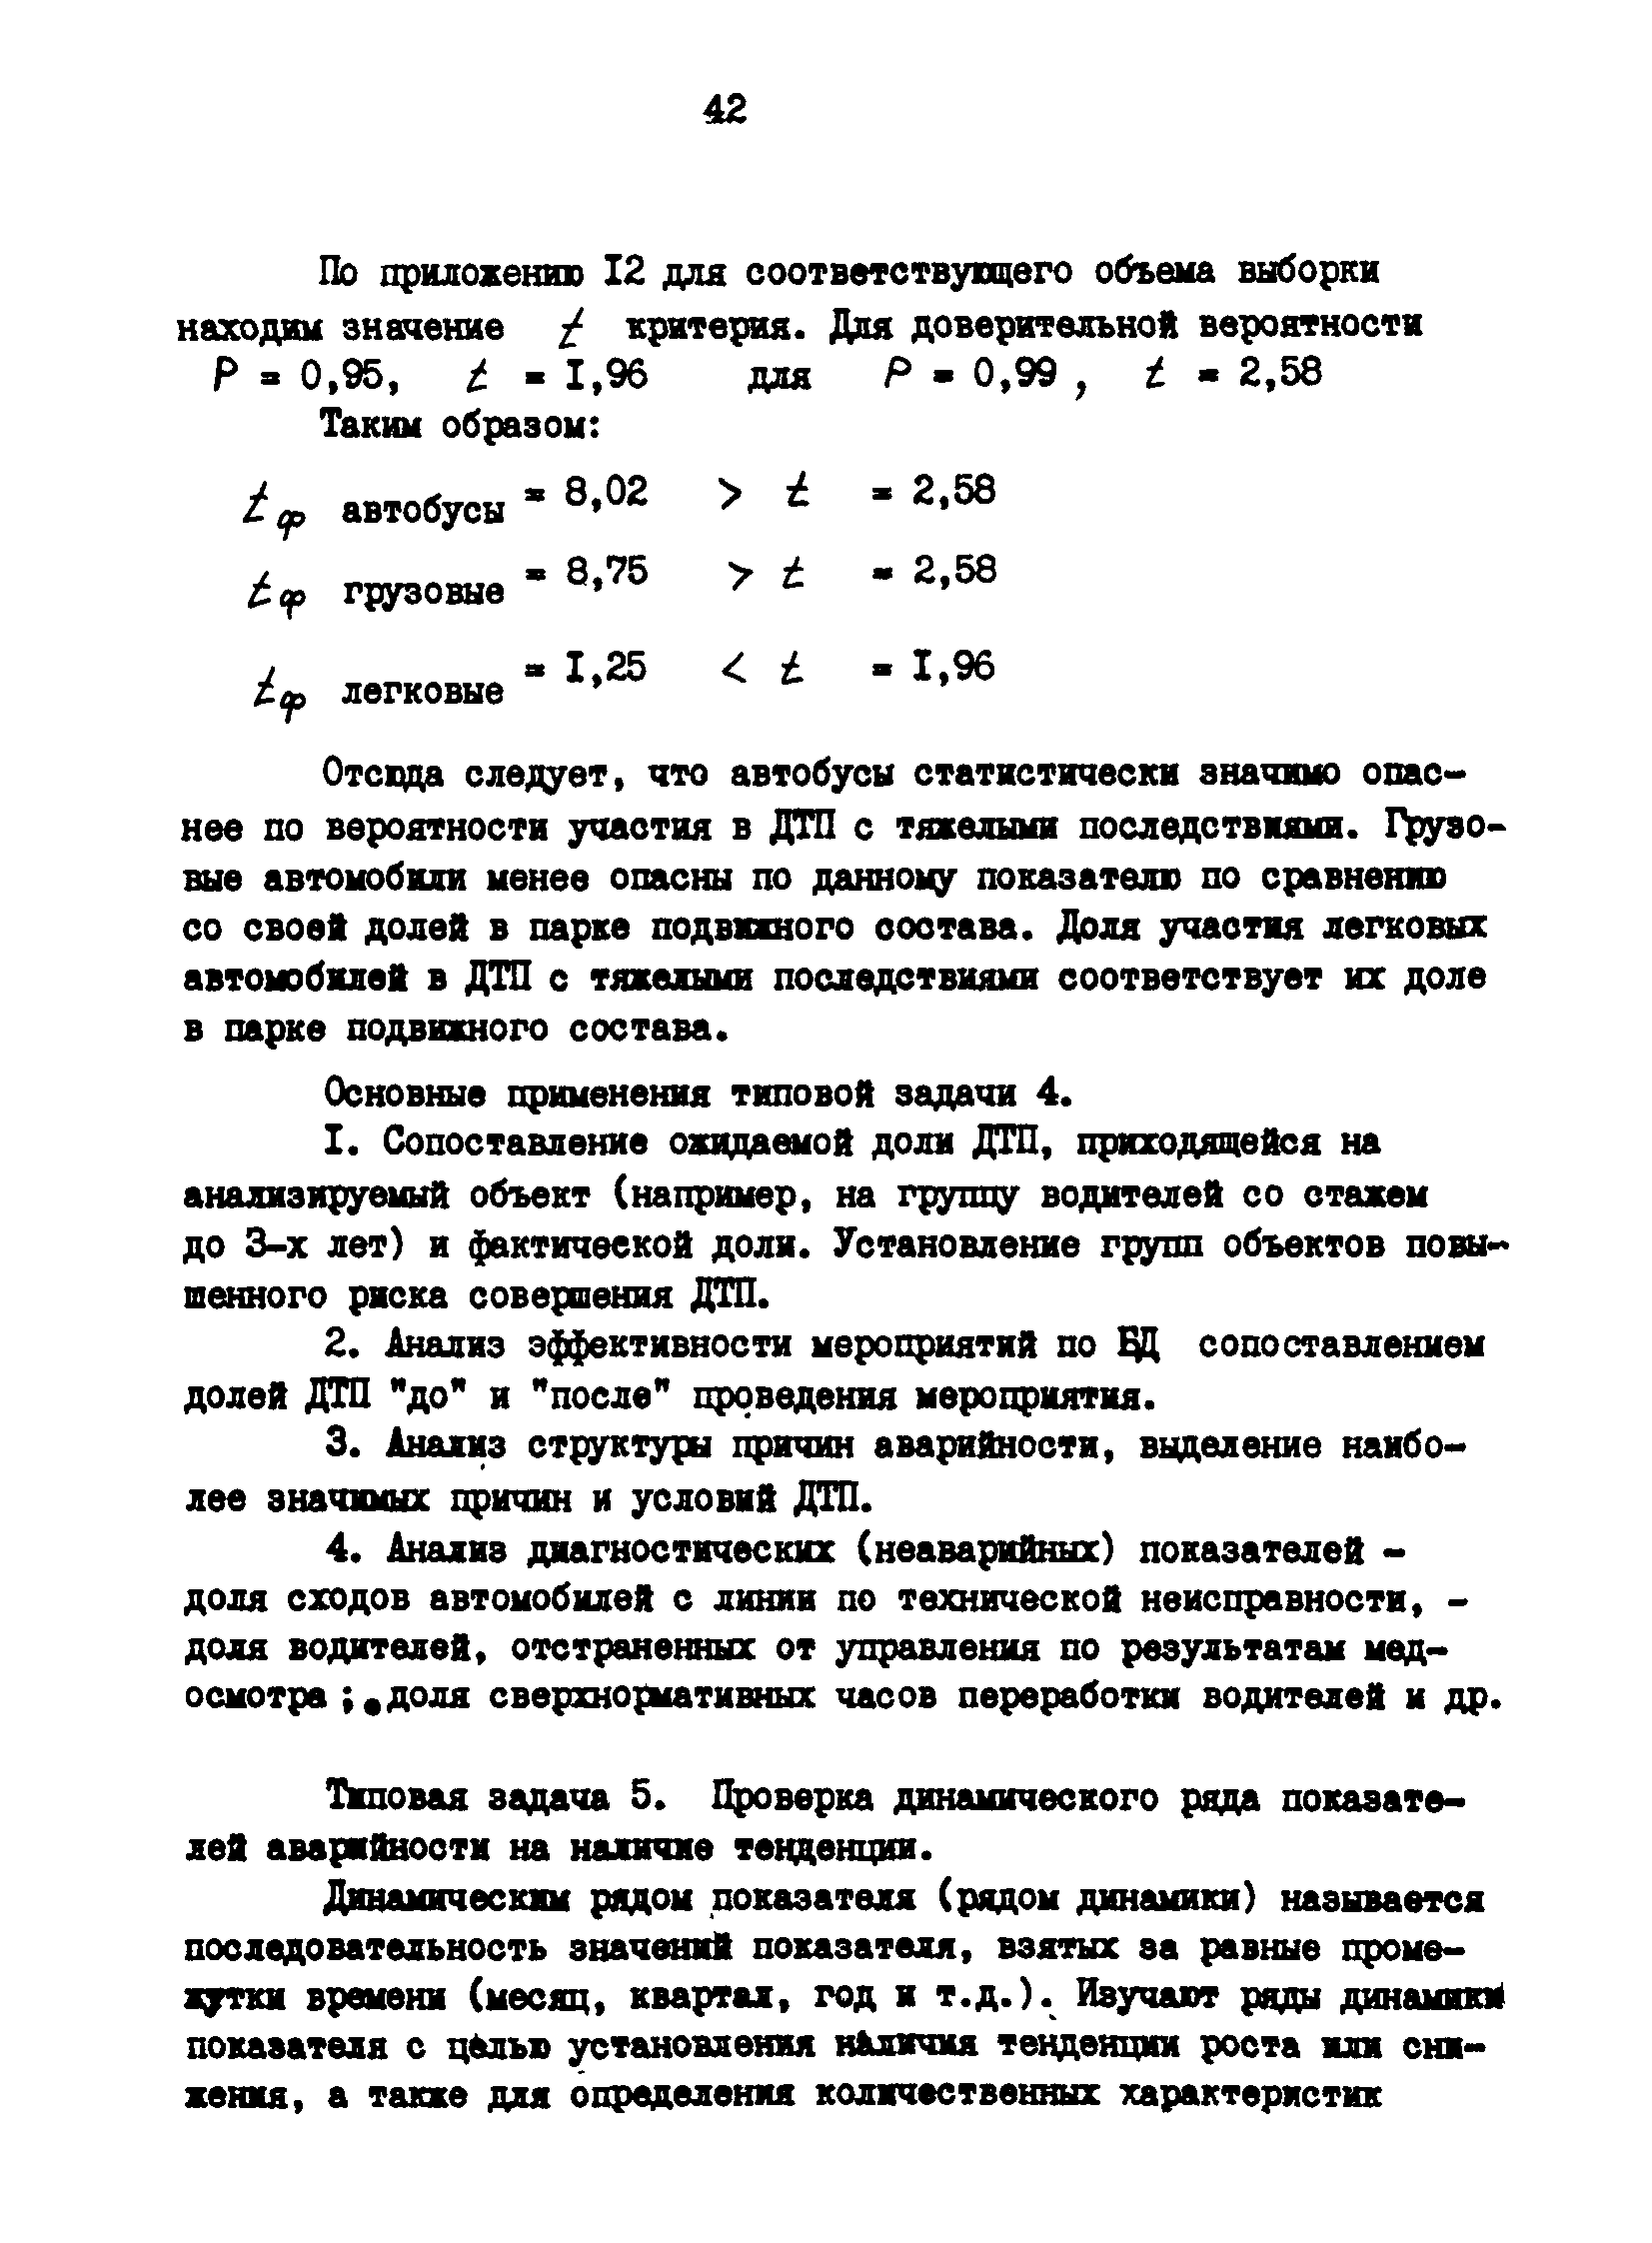 РД 200-РСФСР-12-0071-86-13